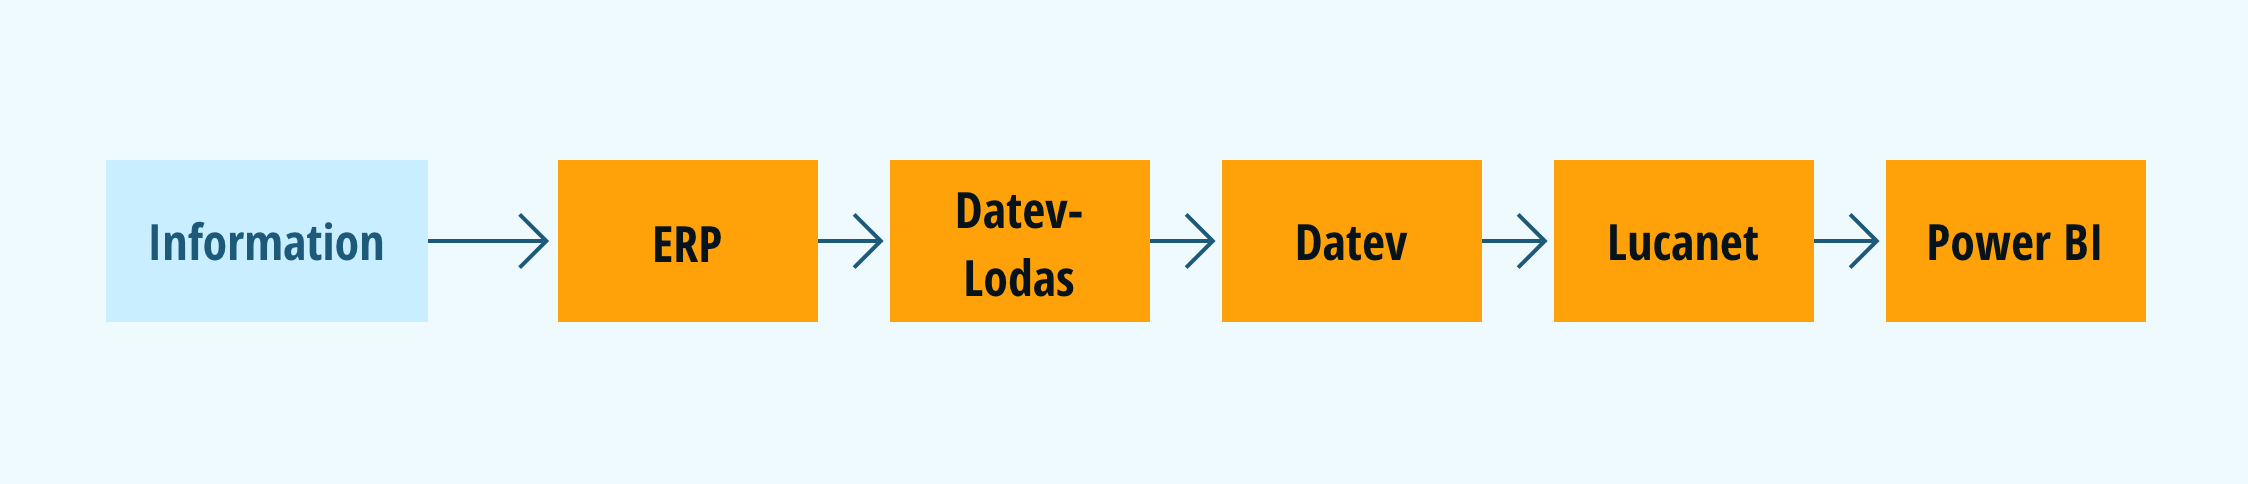 Grafik die Beispielhaft Data Modeling zeigt. Die Information geht zuerst in ERP, dann in DATEV-Lodas, dann in DATEV, ann in Lucanet und dann in Power-BI